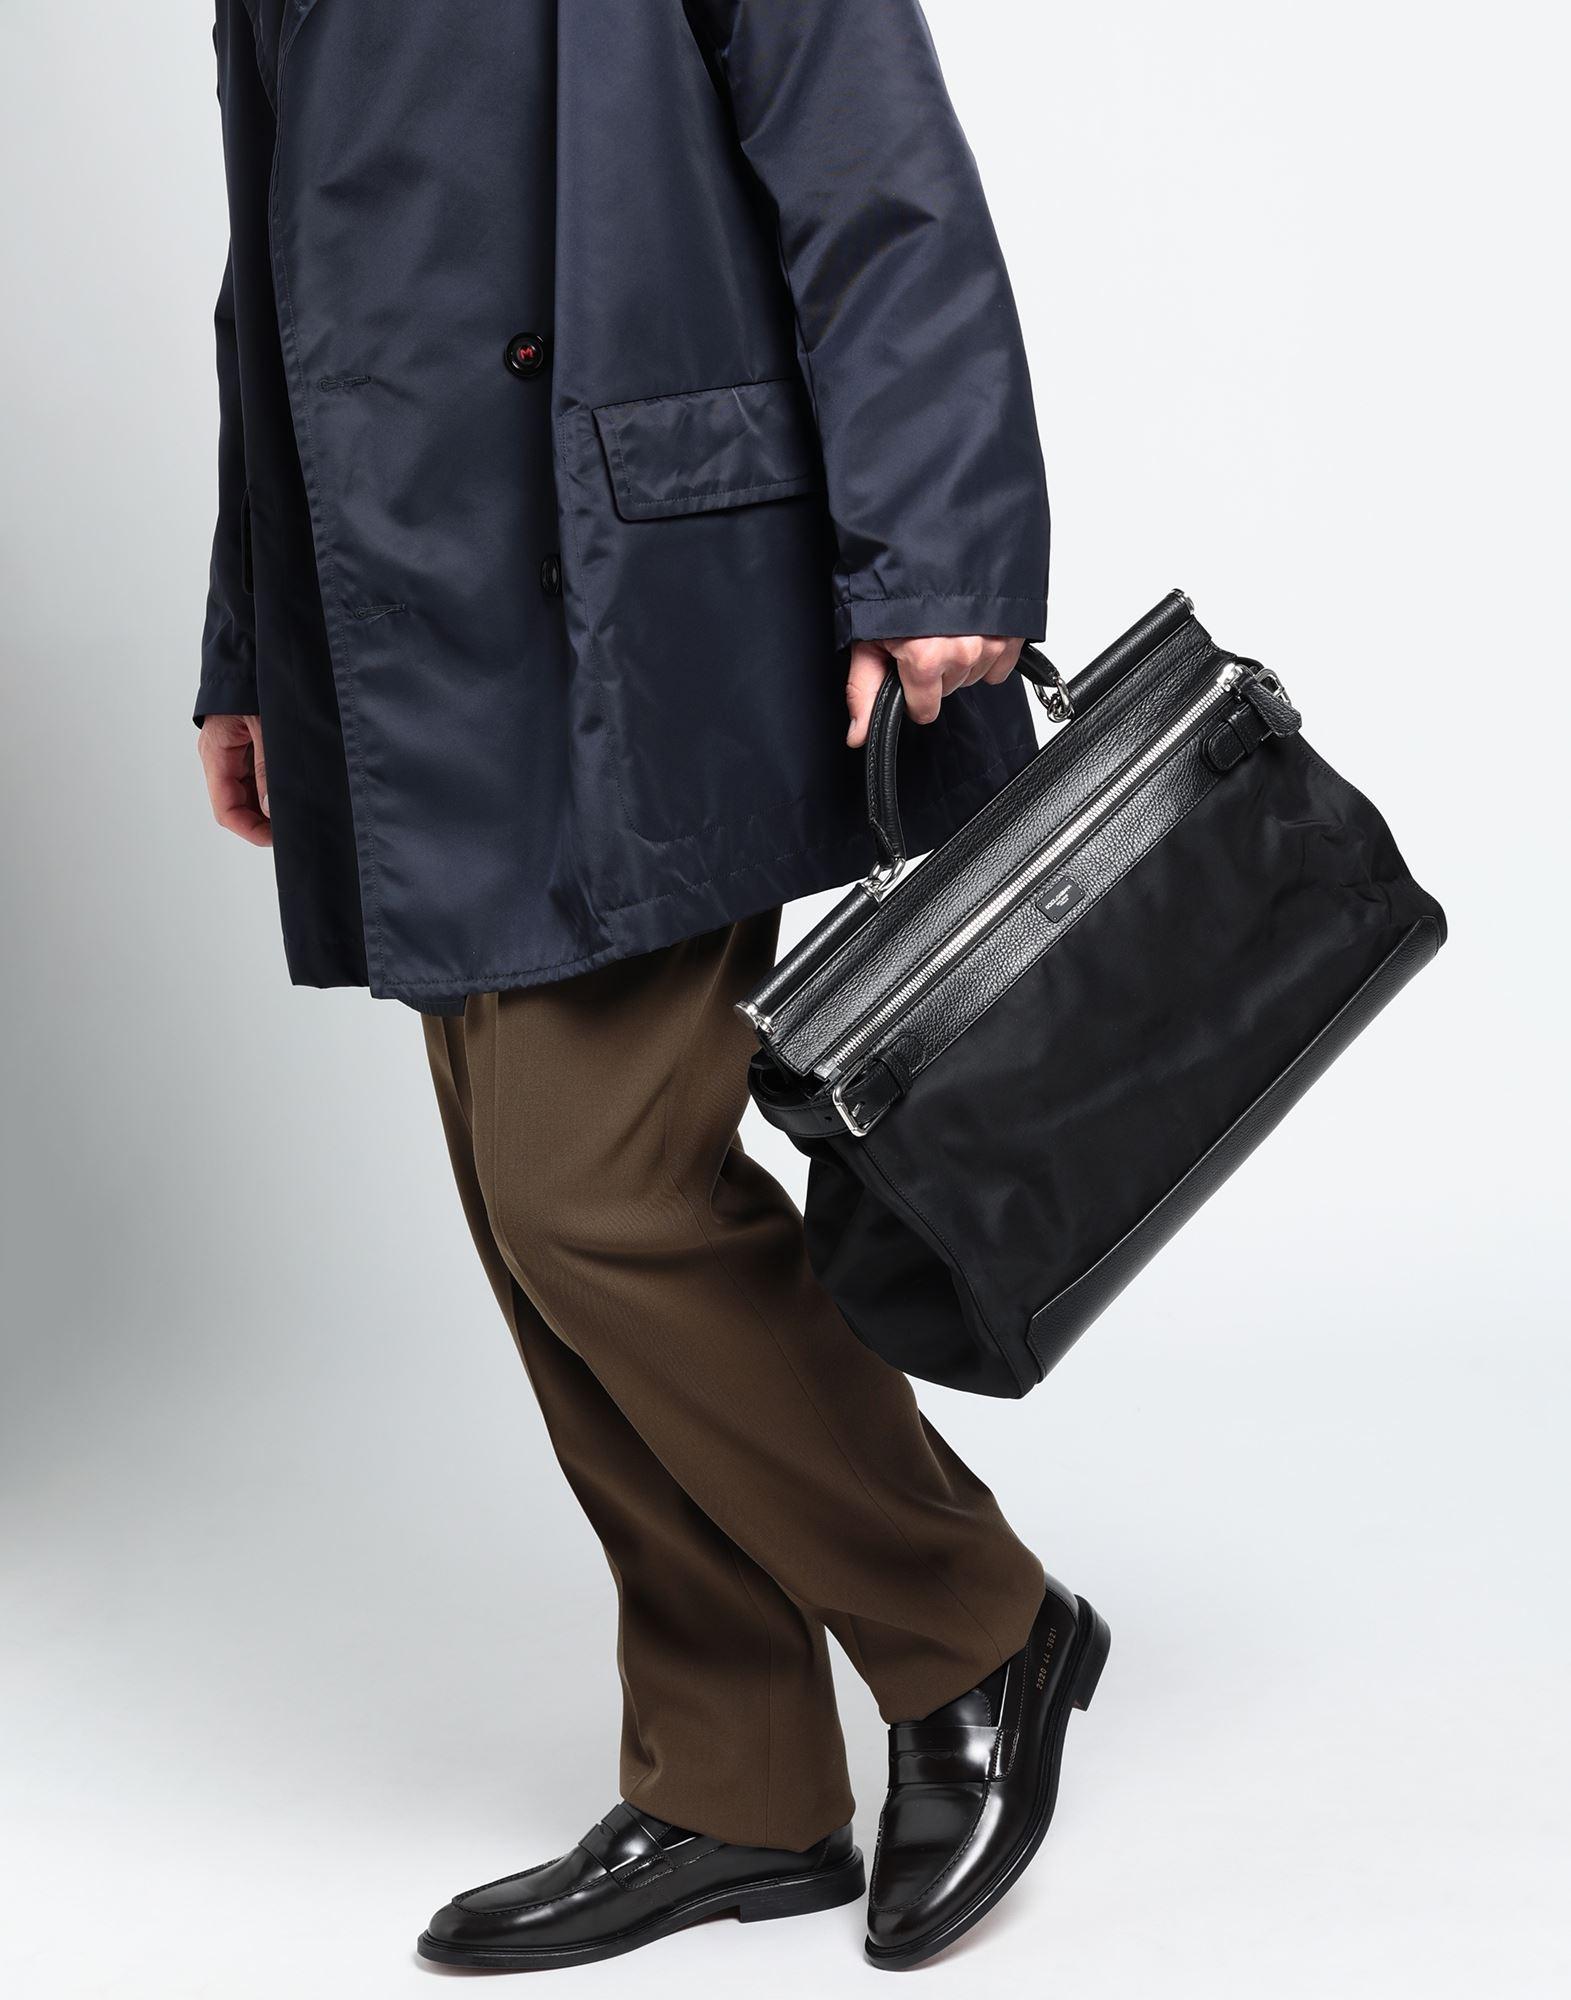 Uomo Borse da Valigette e borse per laptop Borsa a manoDolce & Gabbana in Pelle da Uomo colore Nero 